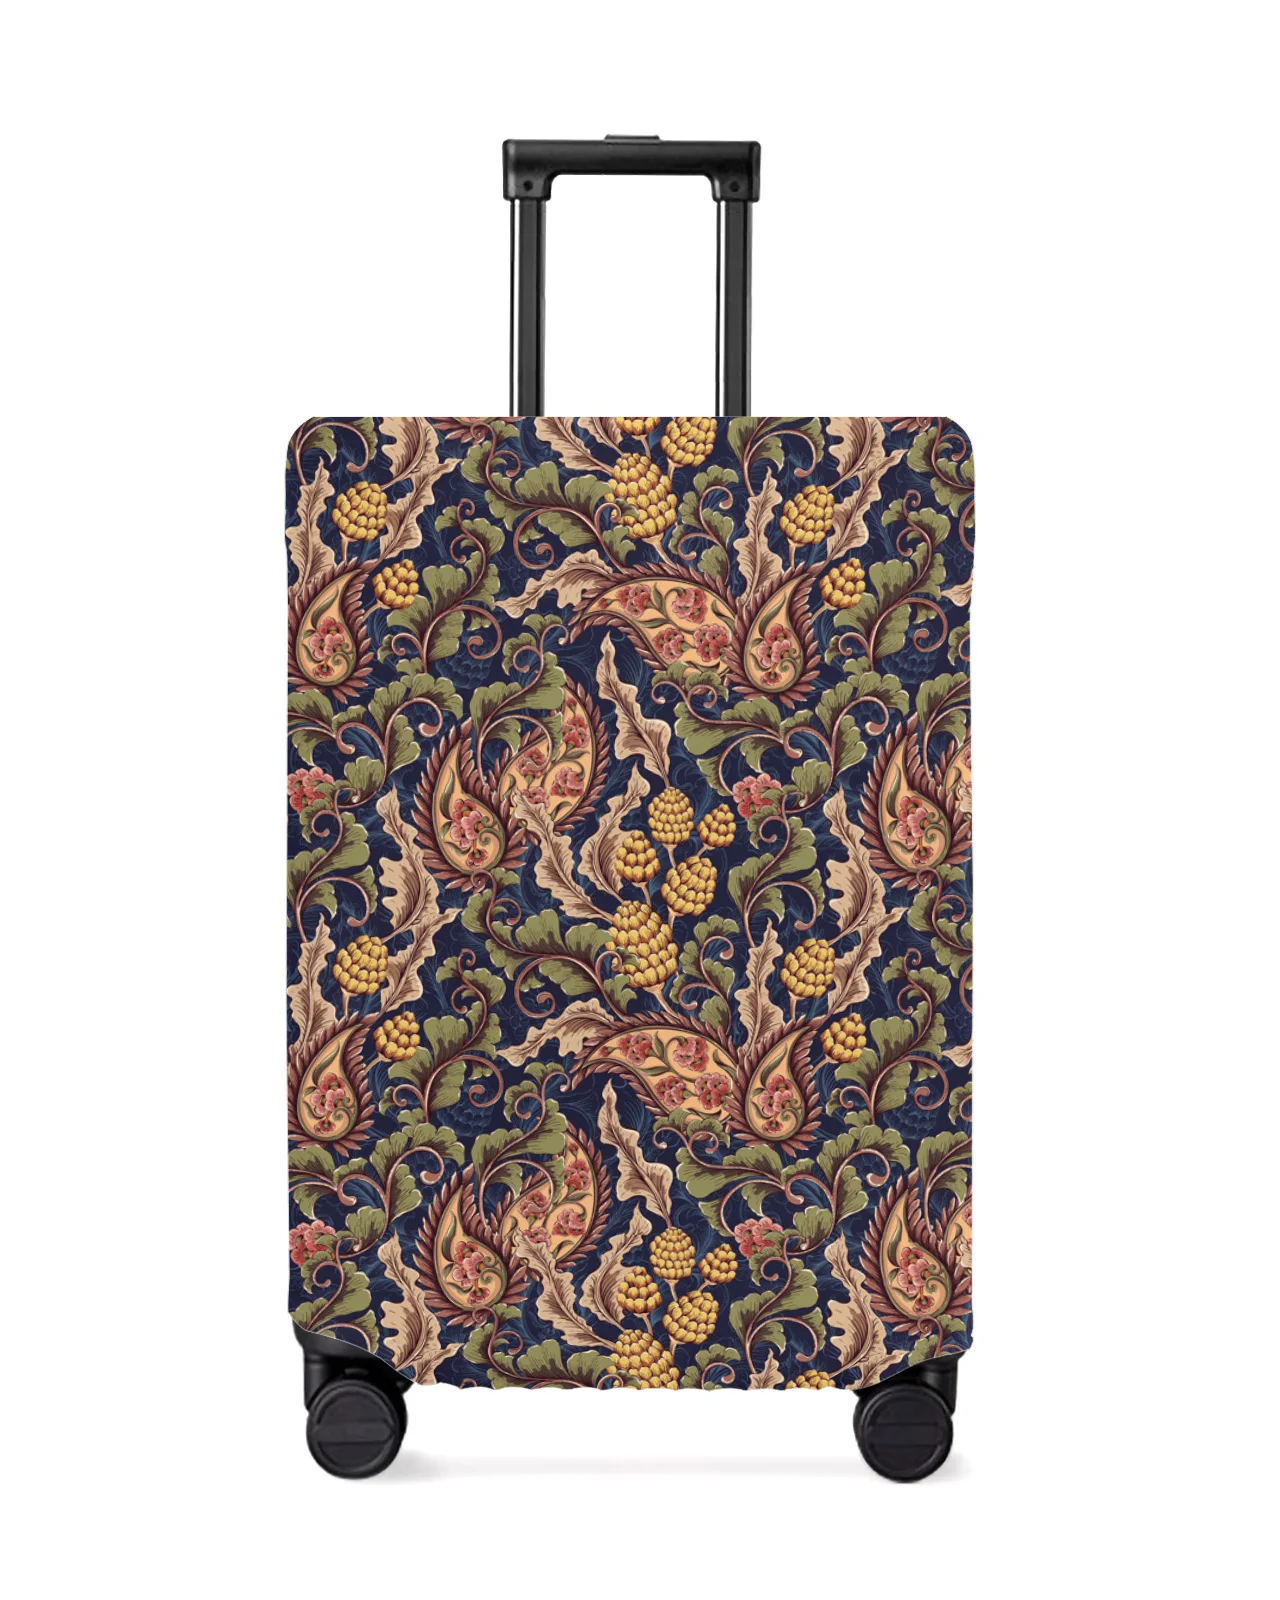 juste-de-protection-elastique-pour-bagages-de-voyage-motif-cachemire-feuilles-de-plantes-etui-anti-poussiere-manchon-de-protection-accessoires-de-valise